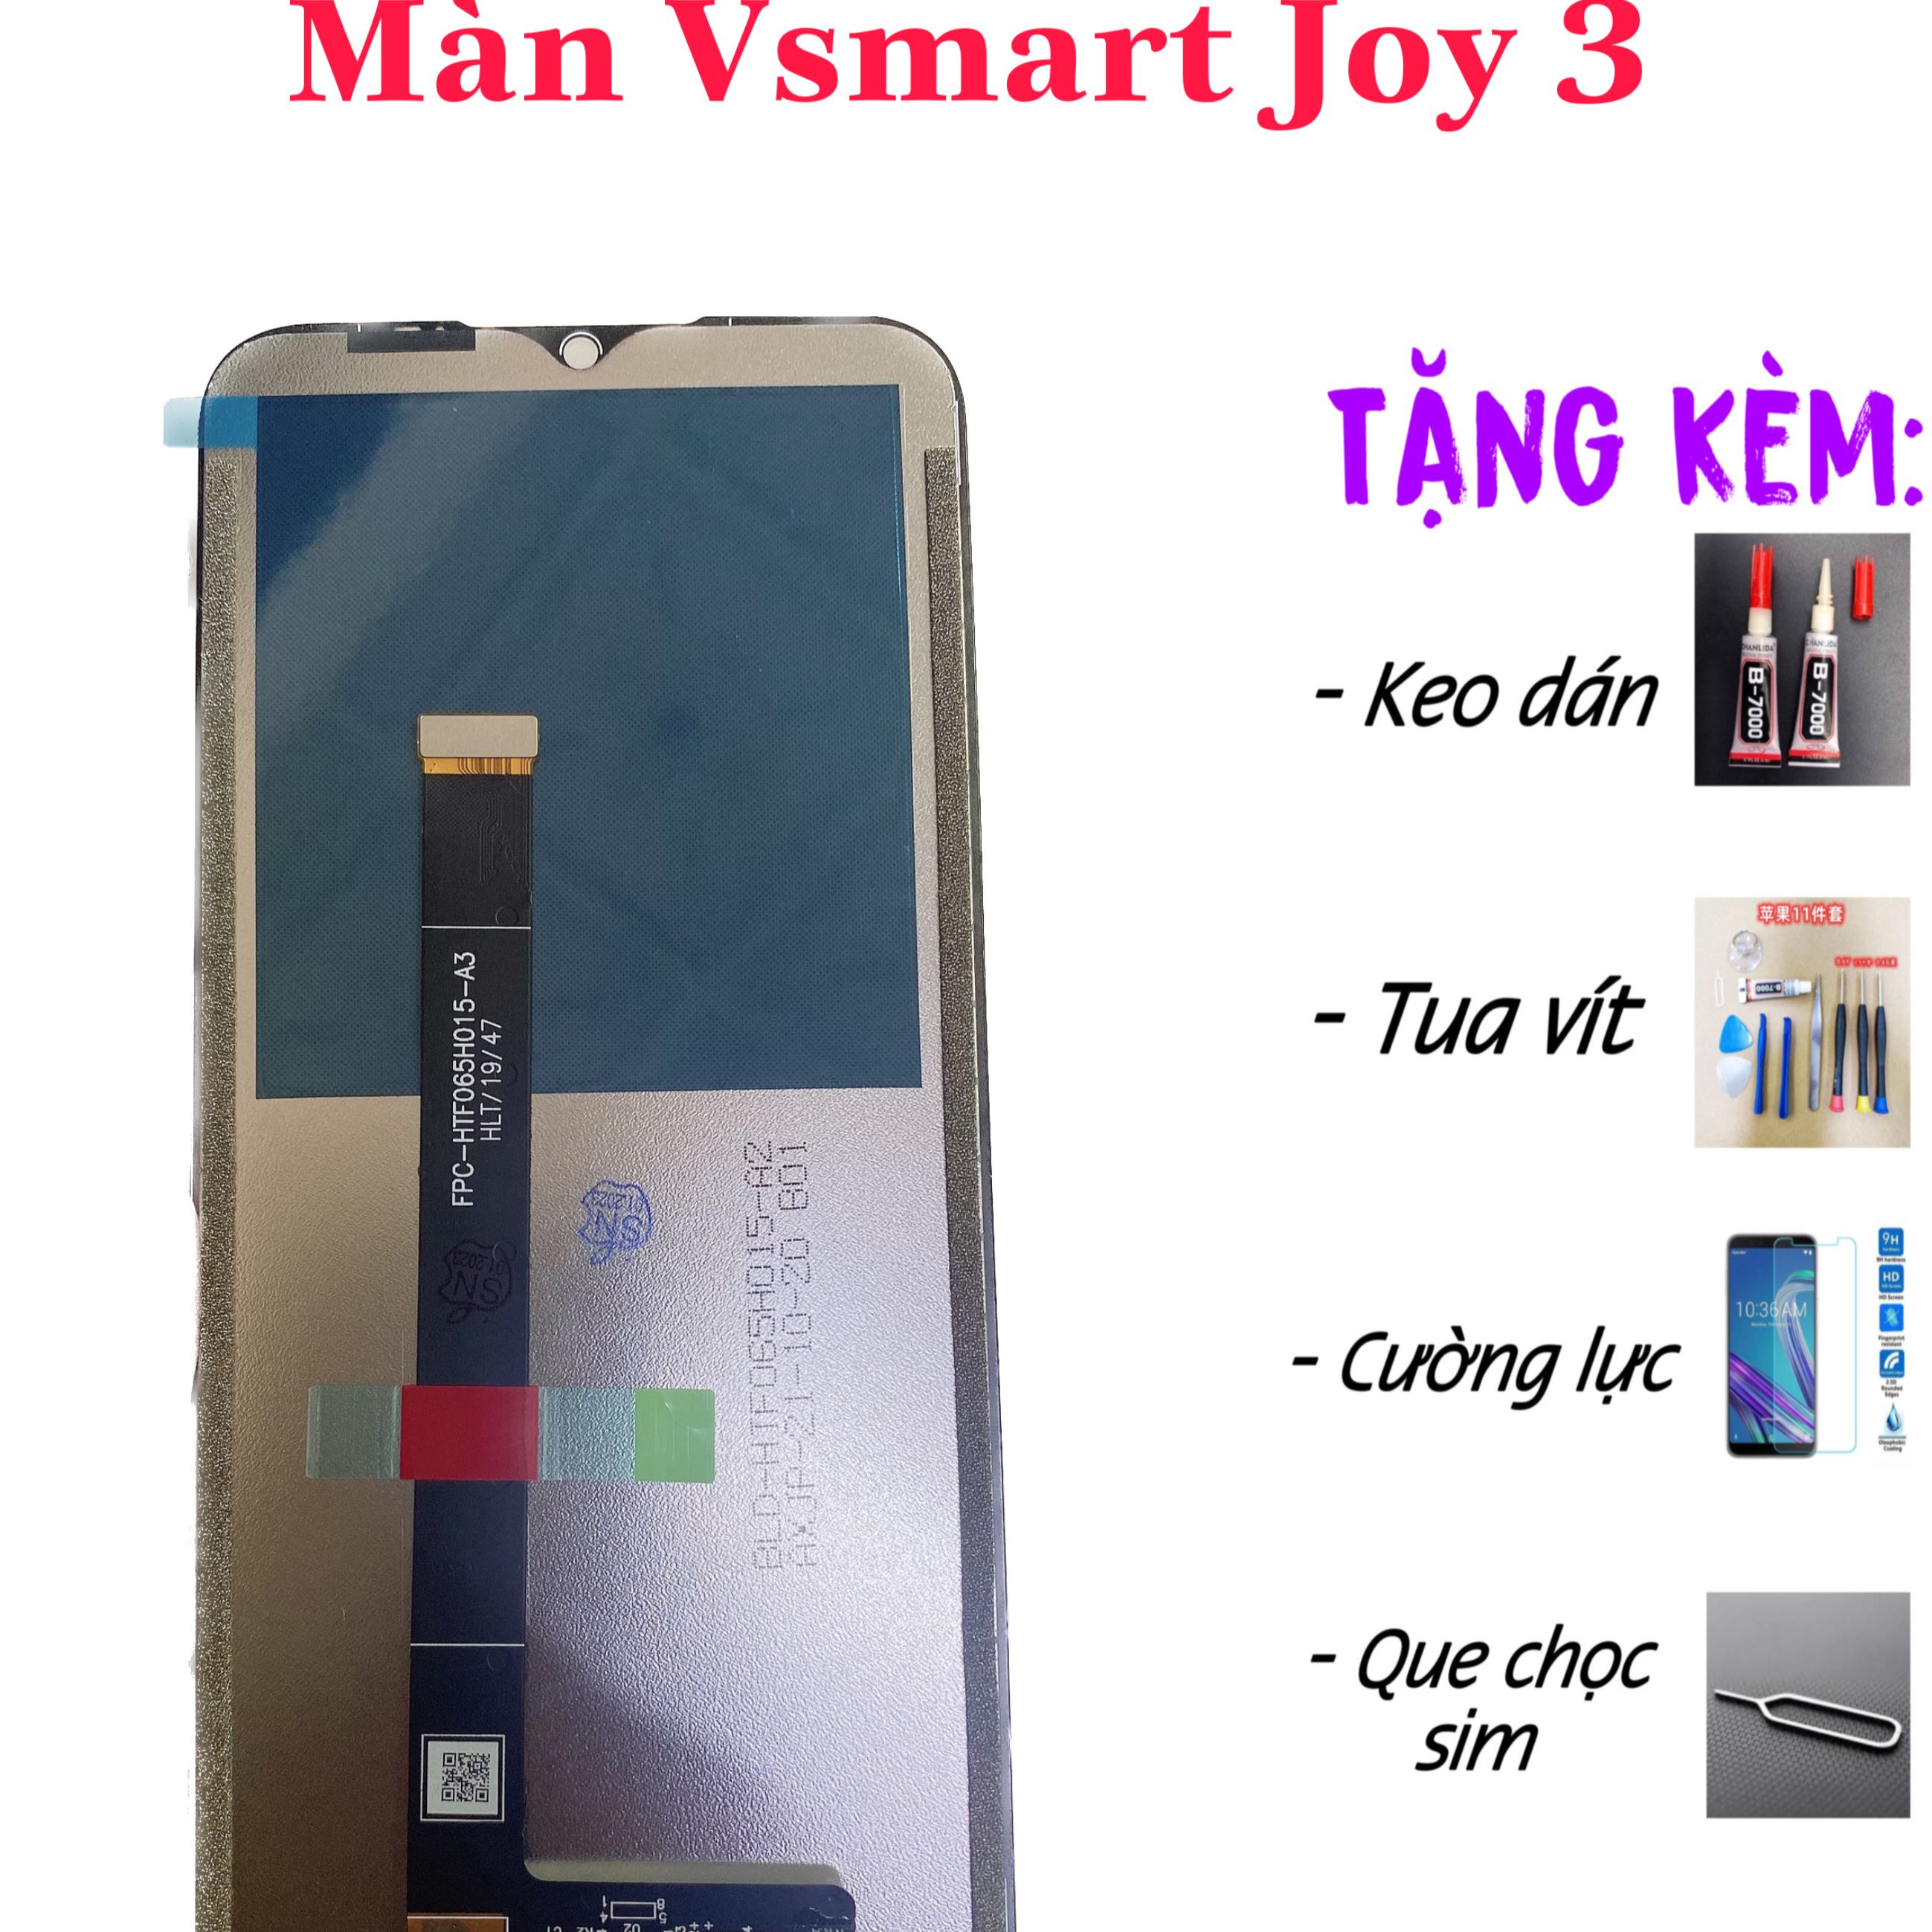 Vsmart Joy 3 chính thức ra mắt với giá khởi điểm 2,3 triệu đồng | Vietnam+  (VietnamPlus)